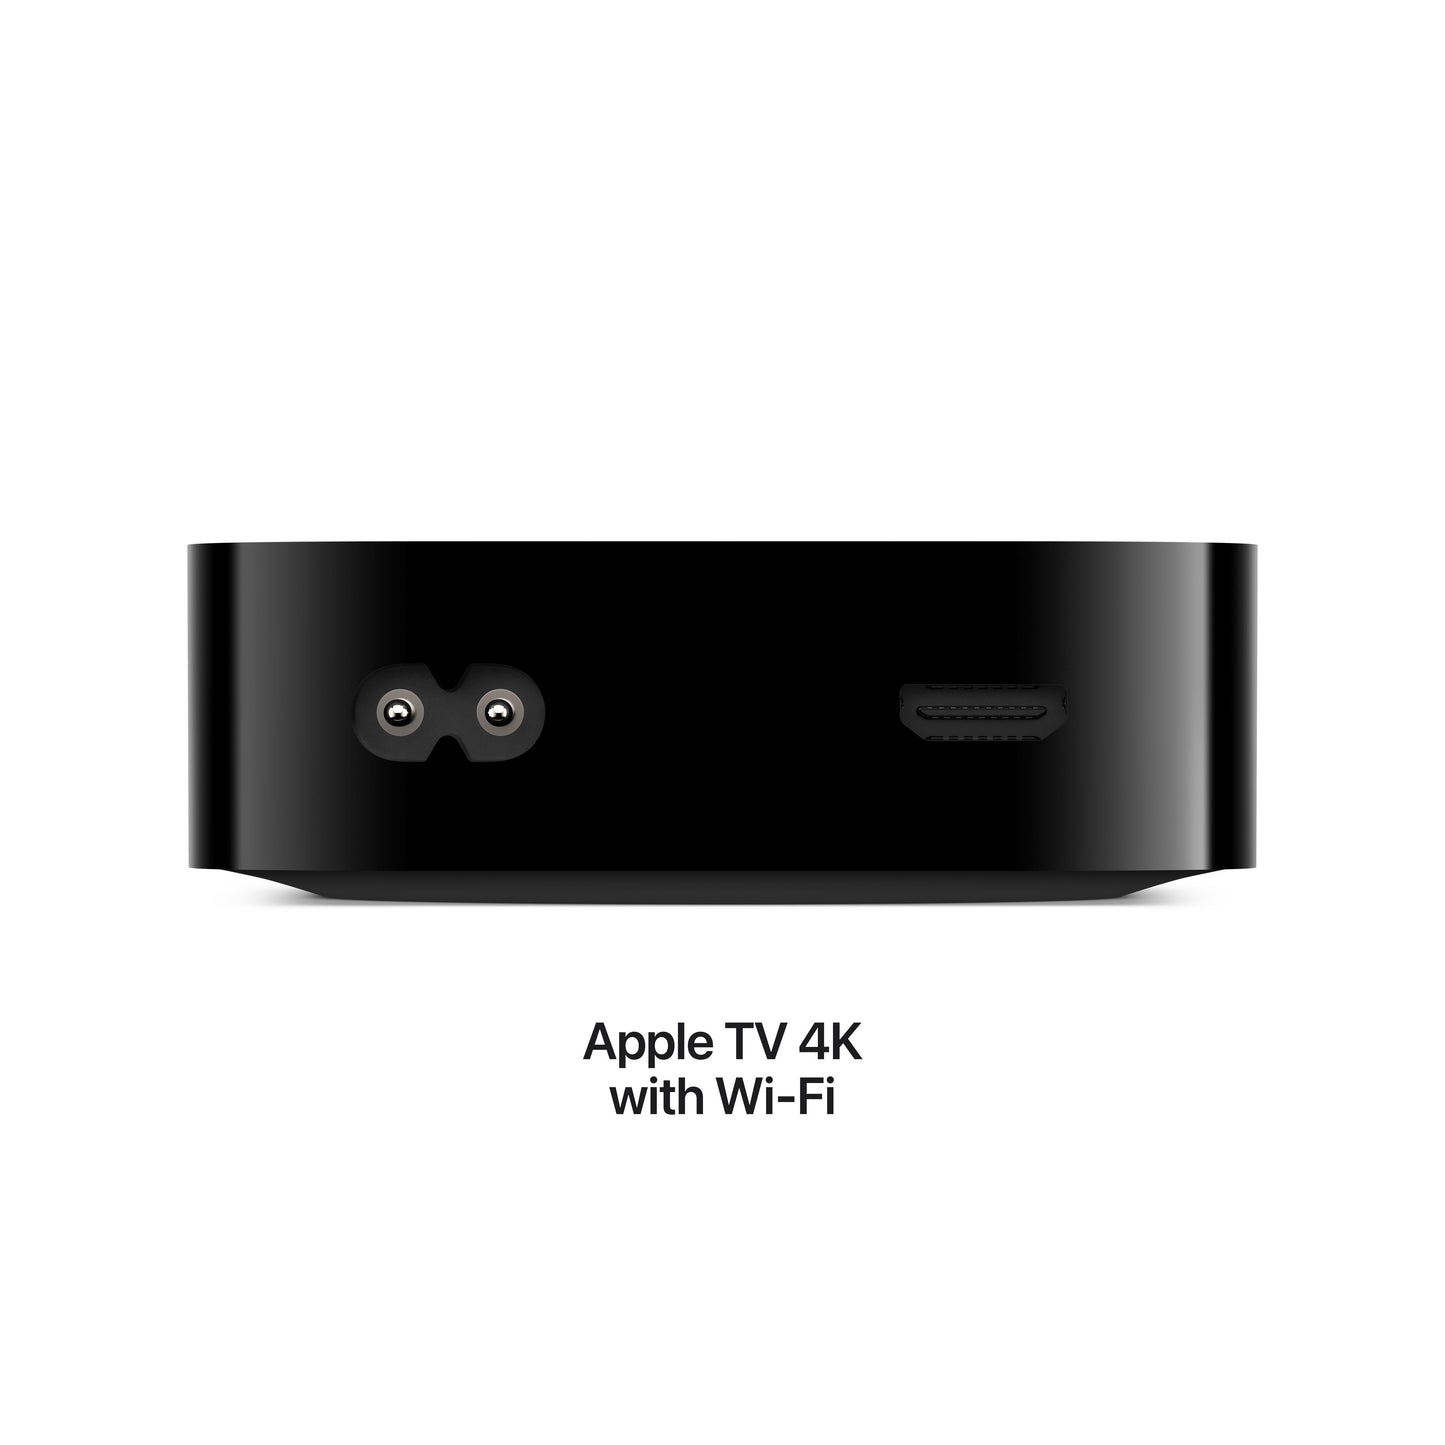 Apple TV 4K Wi? Fi + Ethernet with 128GB storage